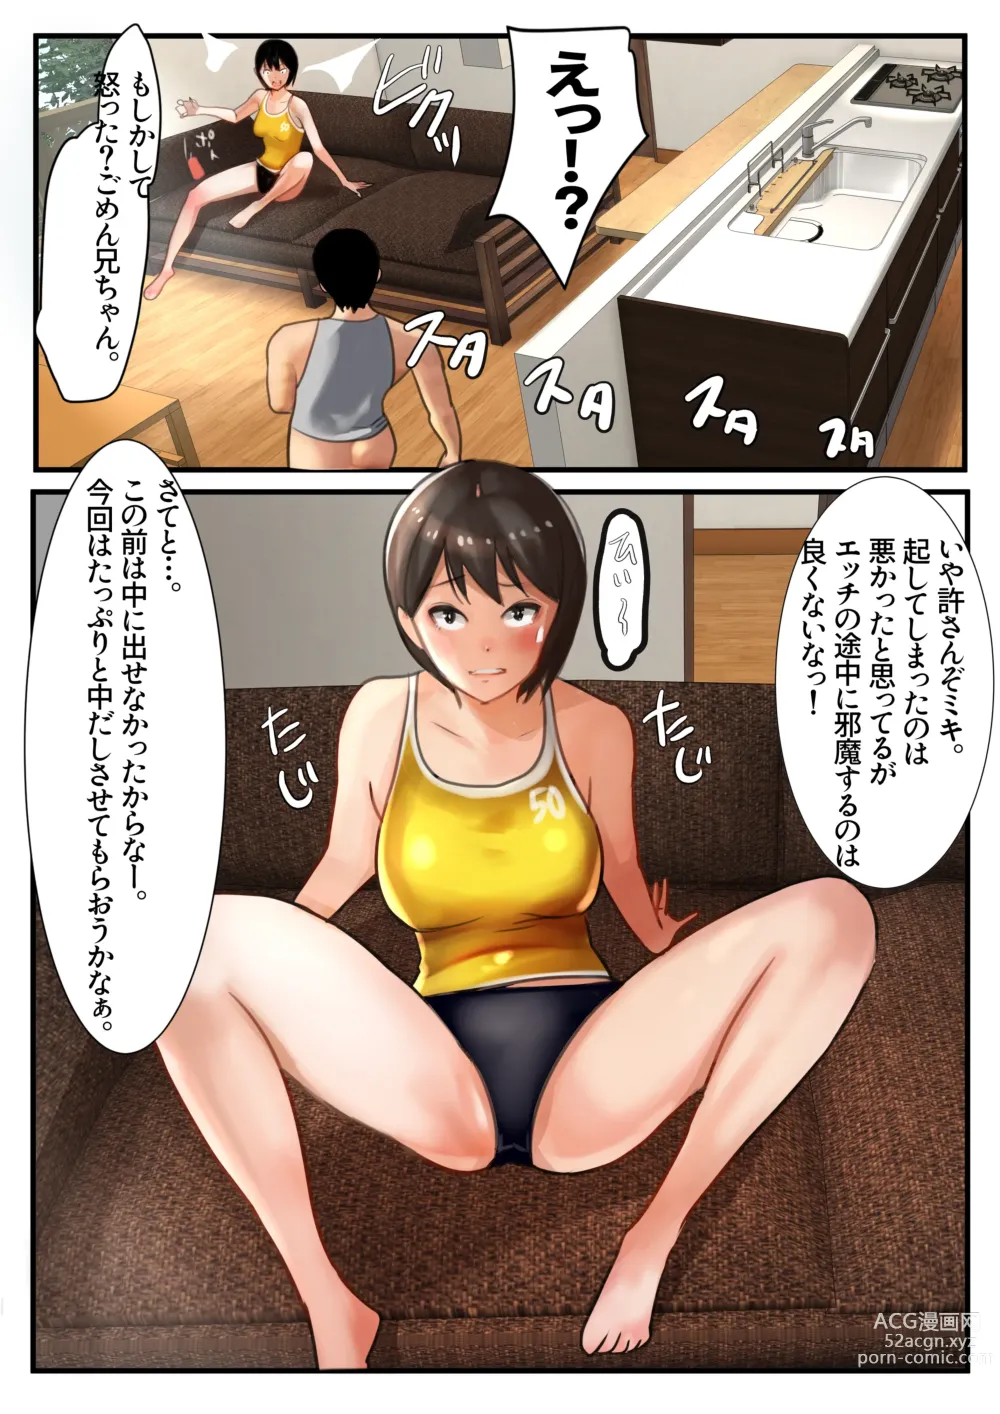 Page 13 of doujinshi Ani x 4 Shimai no Nichijou